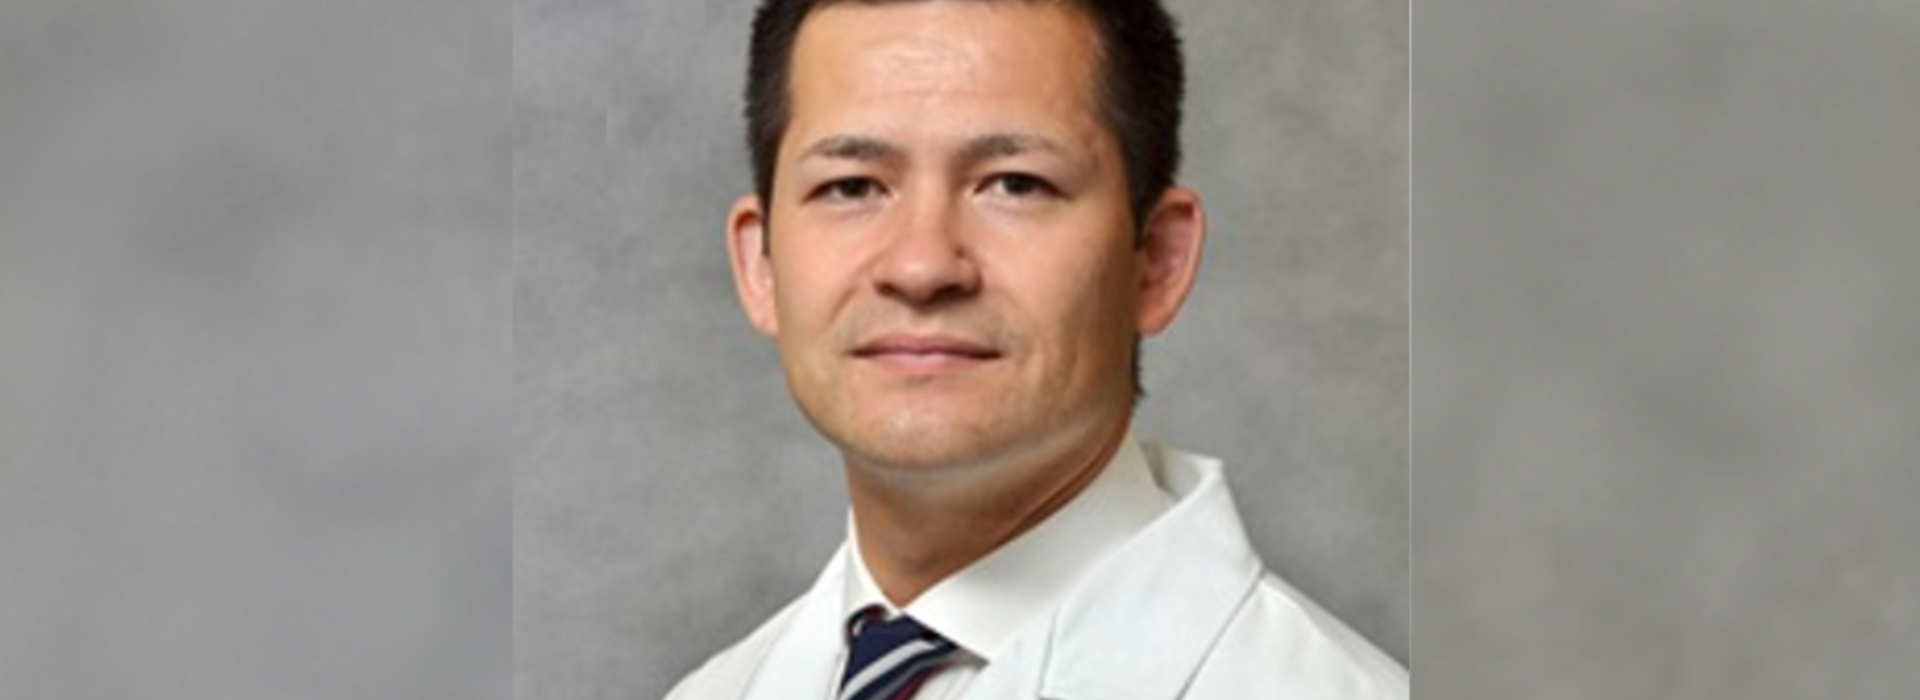 Dr. Nicholas Lim poses for professional headshot